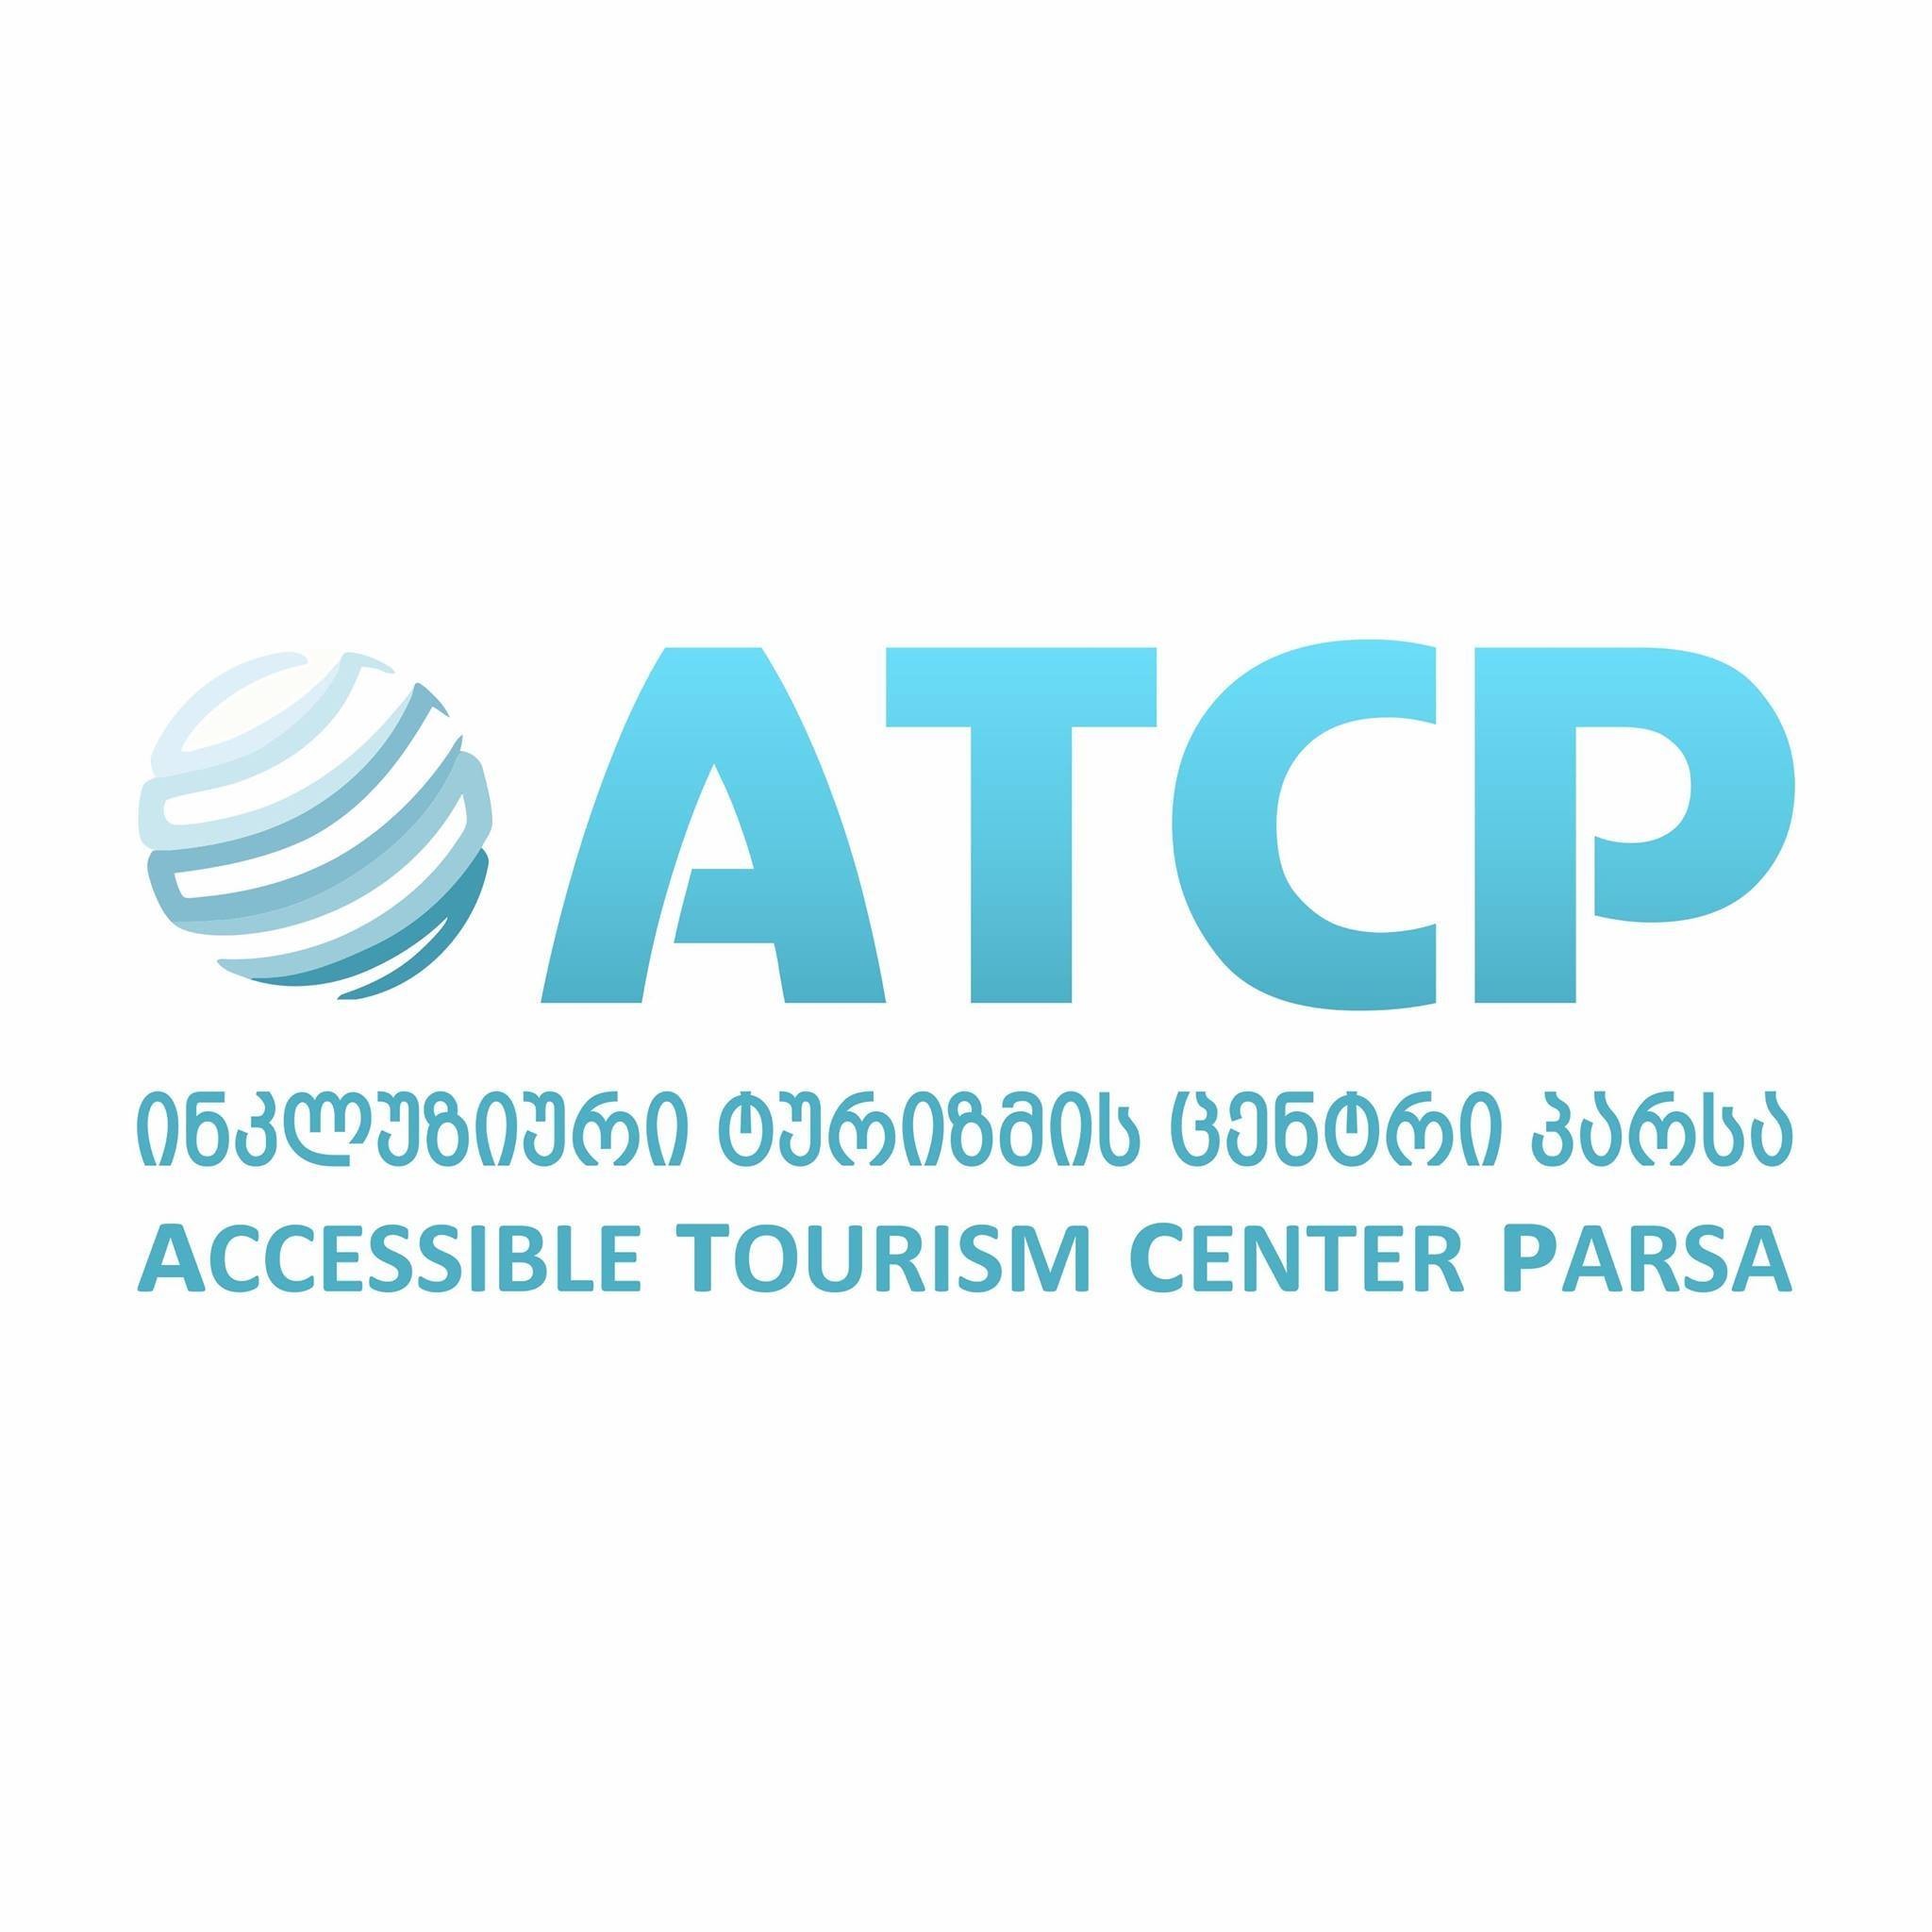 Accessible Tourism Center Parsa - ATCP